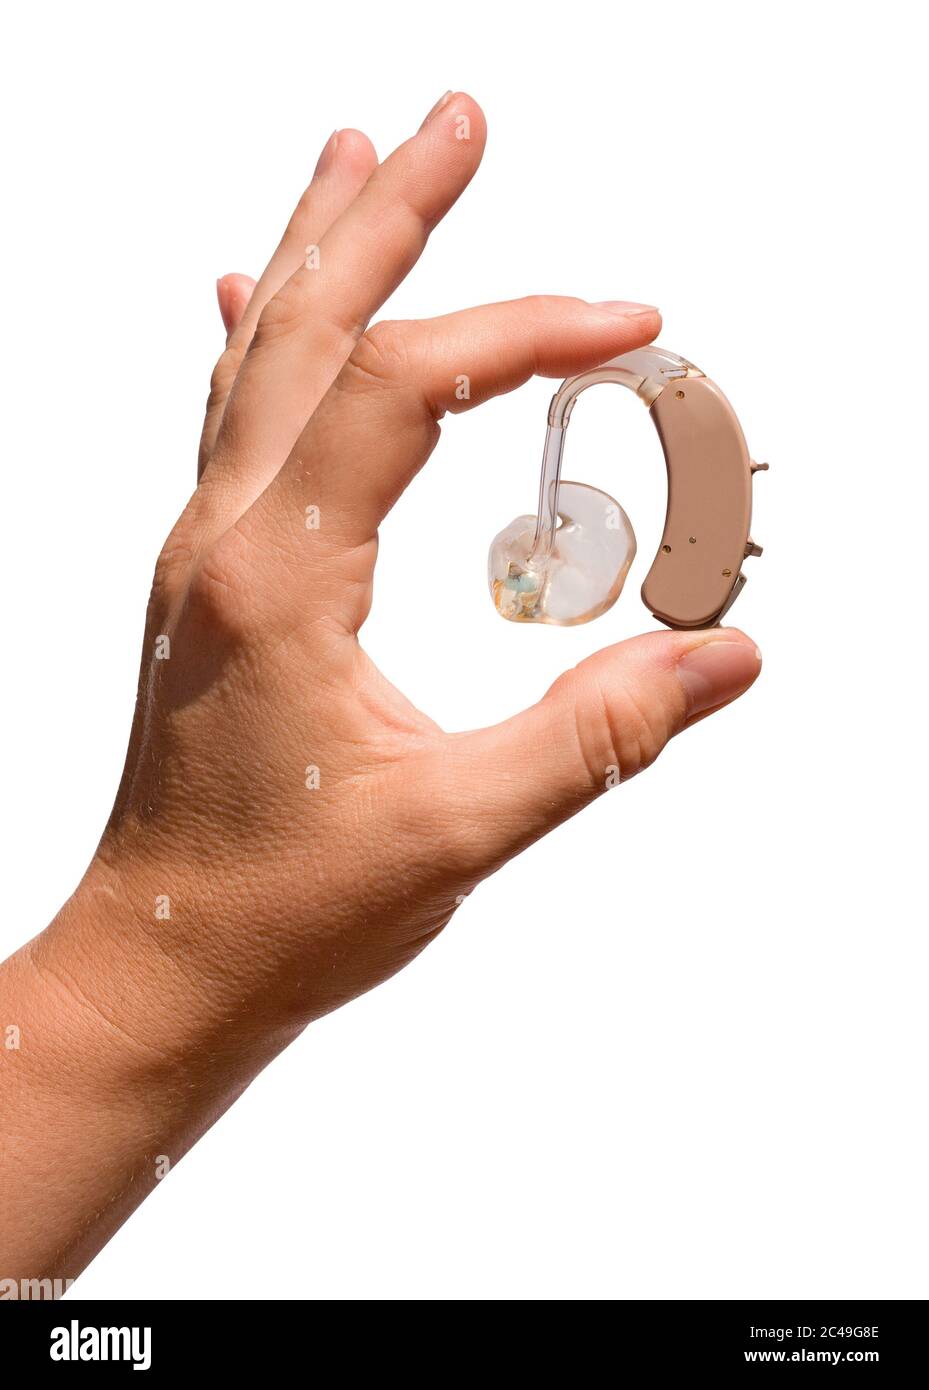 Une femme tient une prothèse auditive numérique avec un embout auriculaire  et des tuyaux entre ses doigts. Isolé sur blanc Photo Stock - Alamy